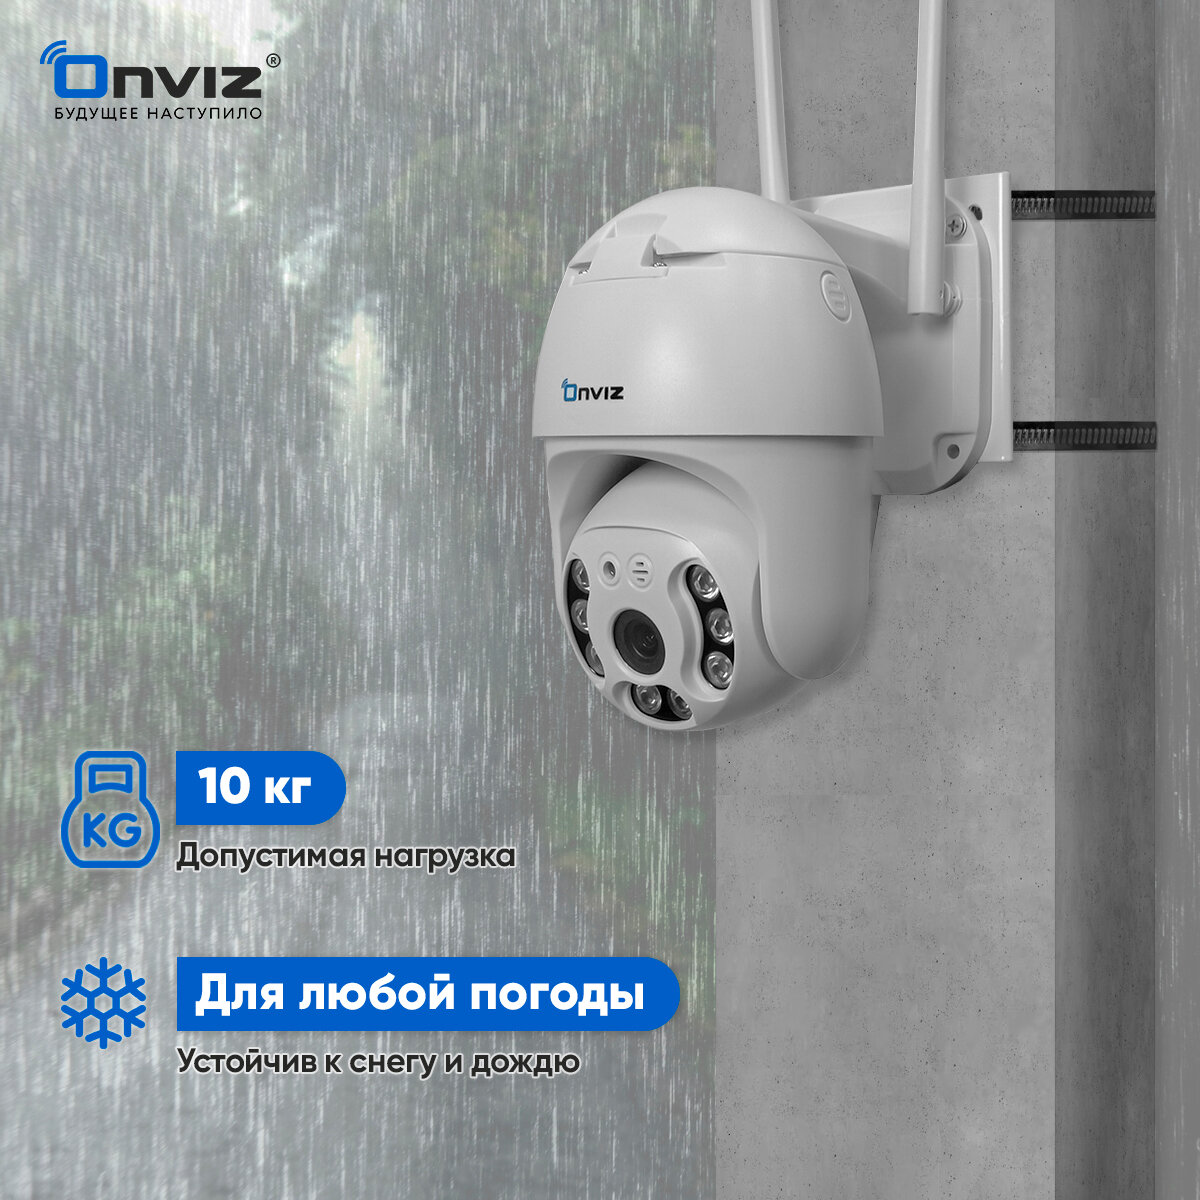 Кронштейн для крепления камеры видеонаблюдения Onviz / крепление камеры видеонаблюдения на столб / хомут на столб 400 мм